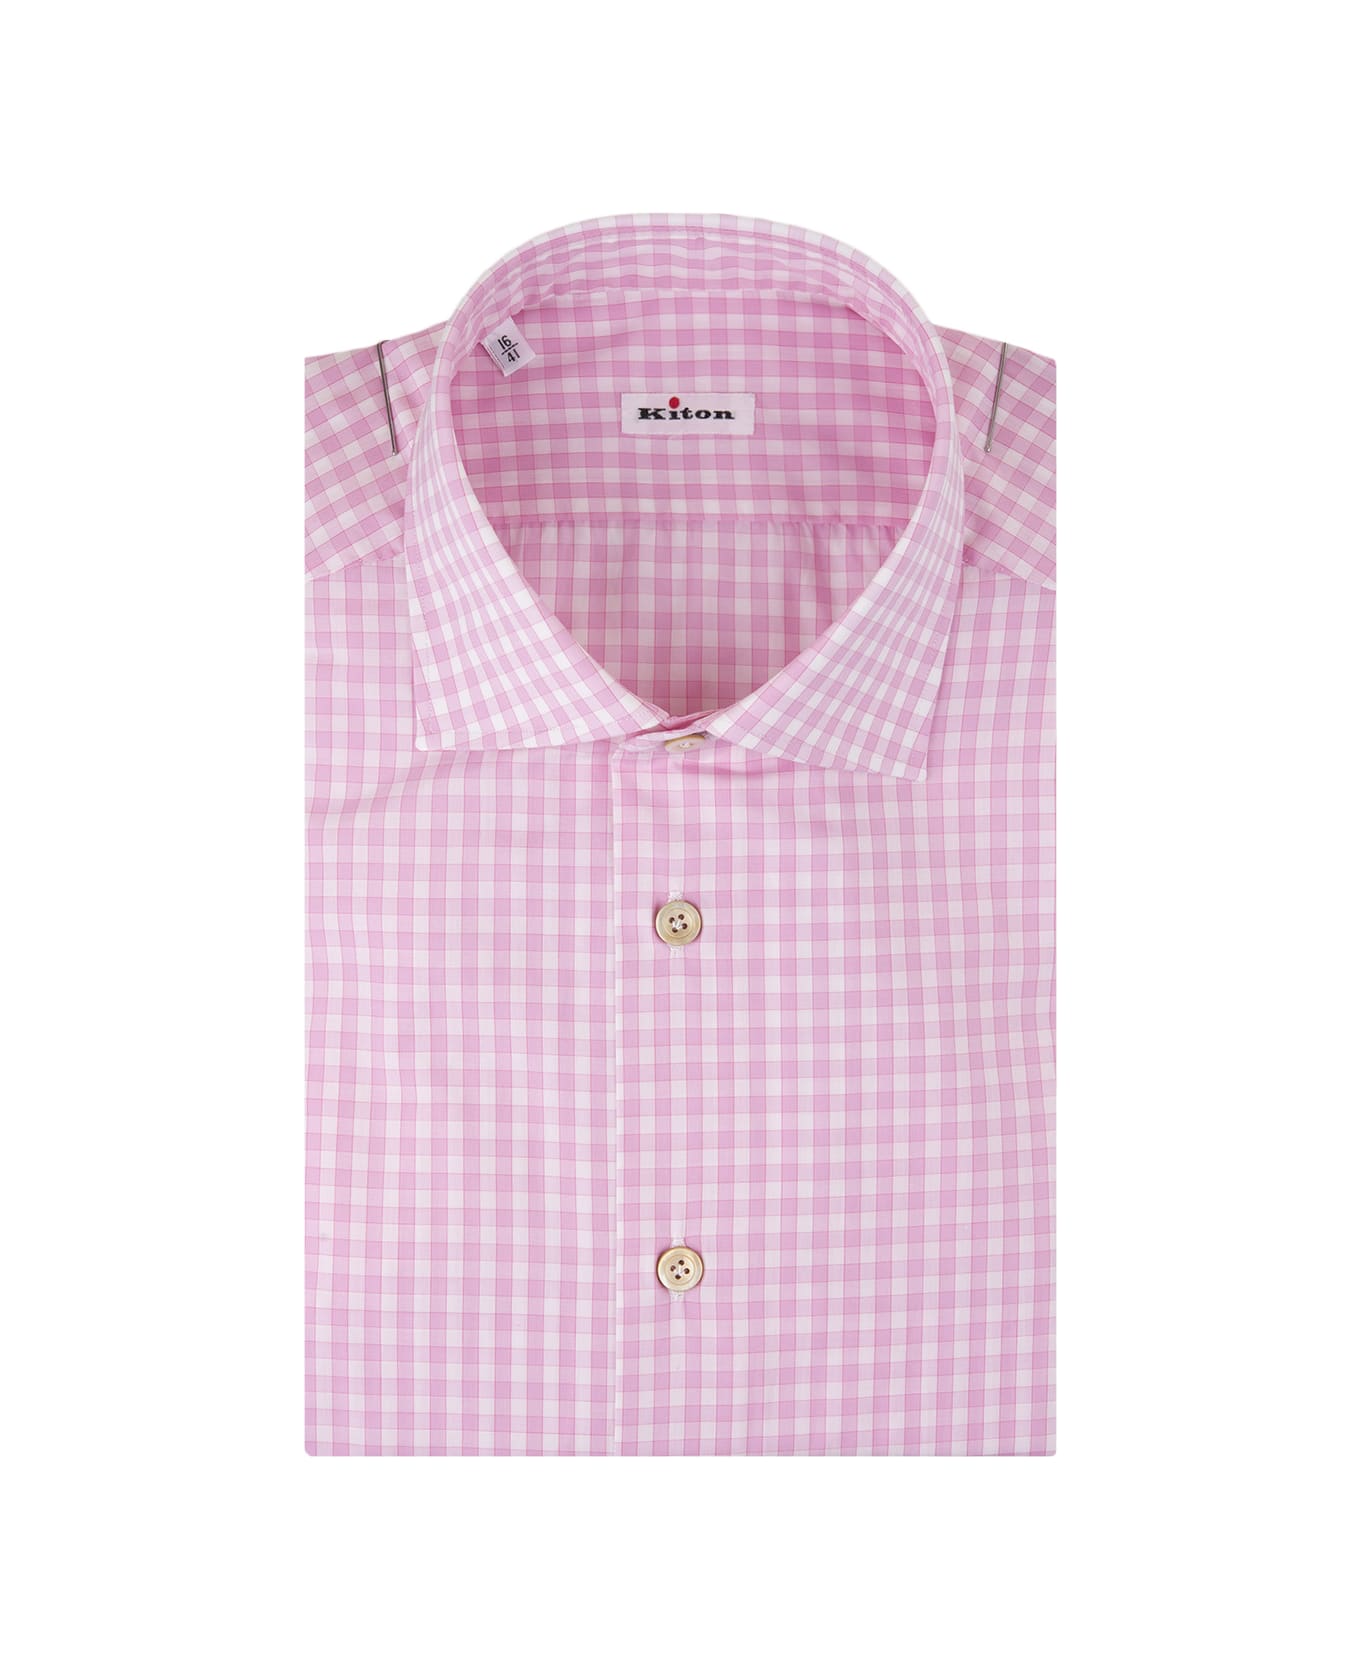 Kiton Pink Check Shirt - Pink